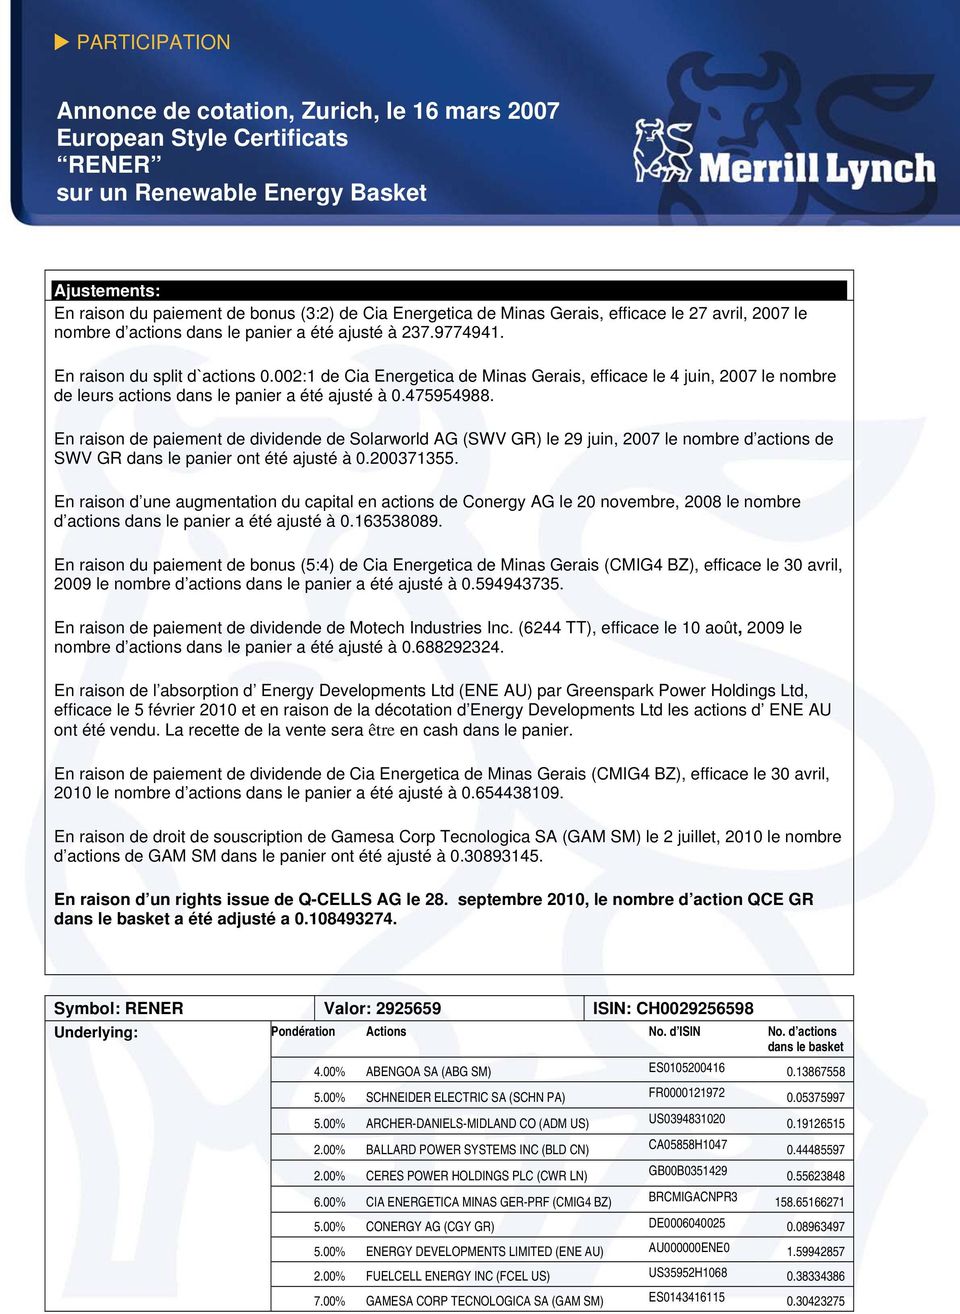 002:1 de Cia Energetica de Minas Gerais, efficace le 4 juin, 2007 le nombre de leurs actions dans le panier a été ajusté à 0.475954988.